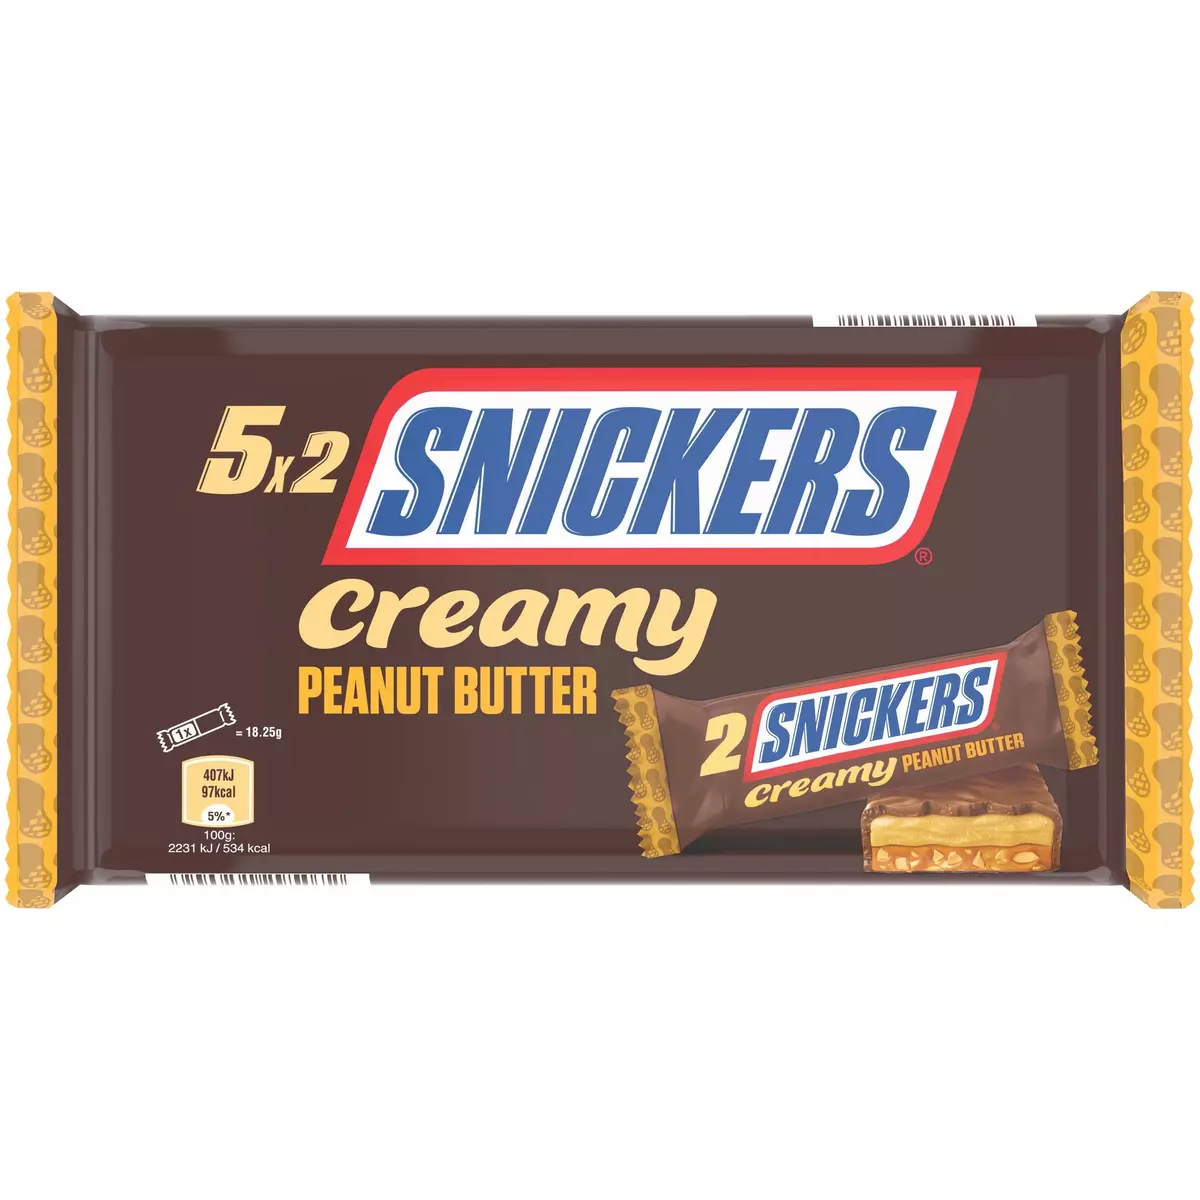 SNICKERS Creamy barres chocolatées aux cacahuètes grillées et caramel 5x2 barres 182.5g